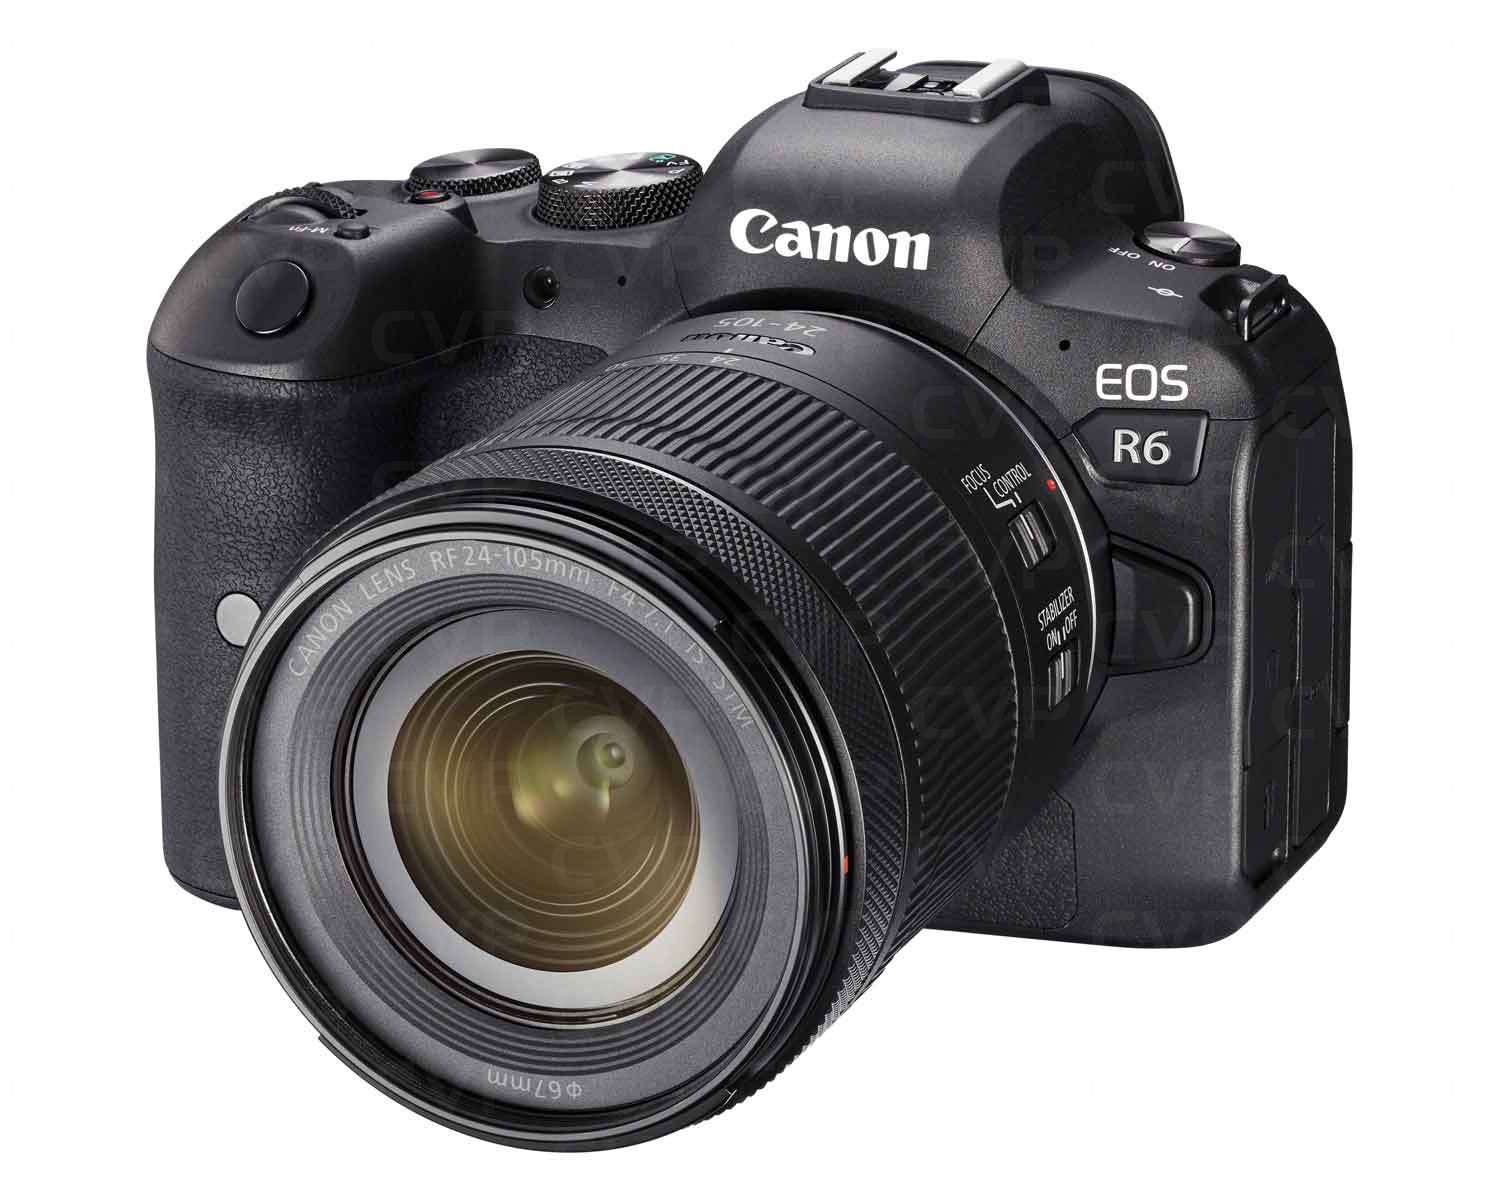 Image: Canon EOS R6